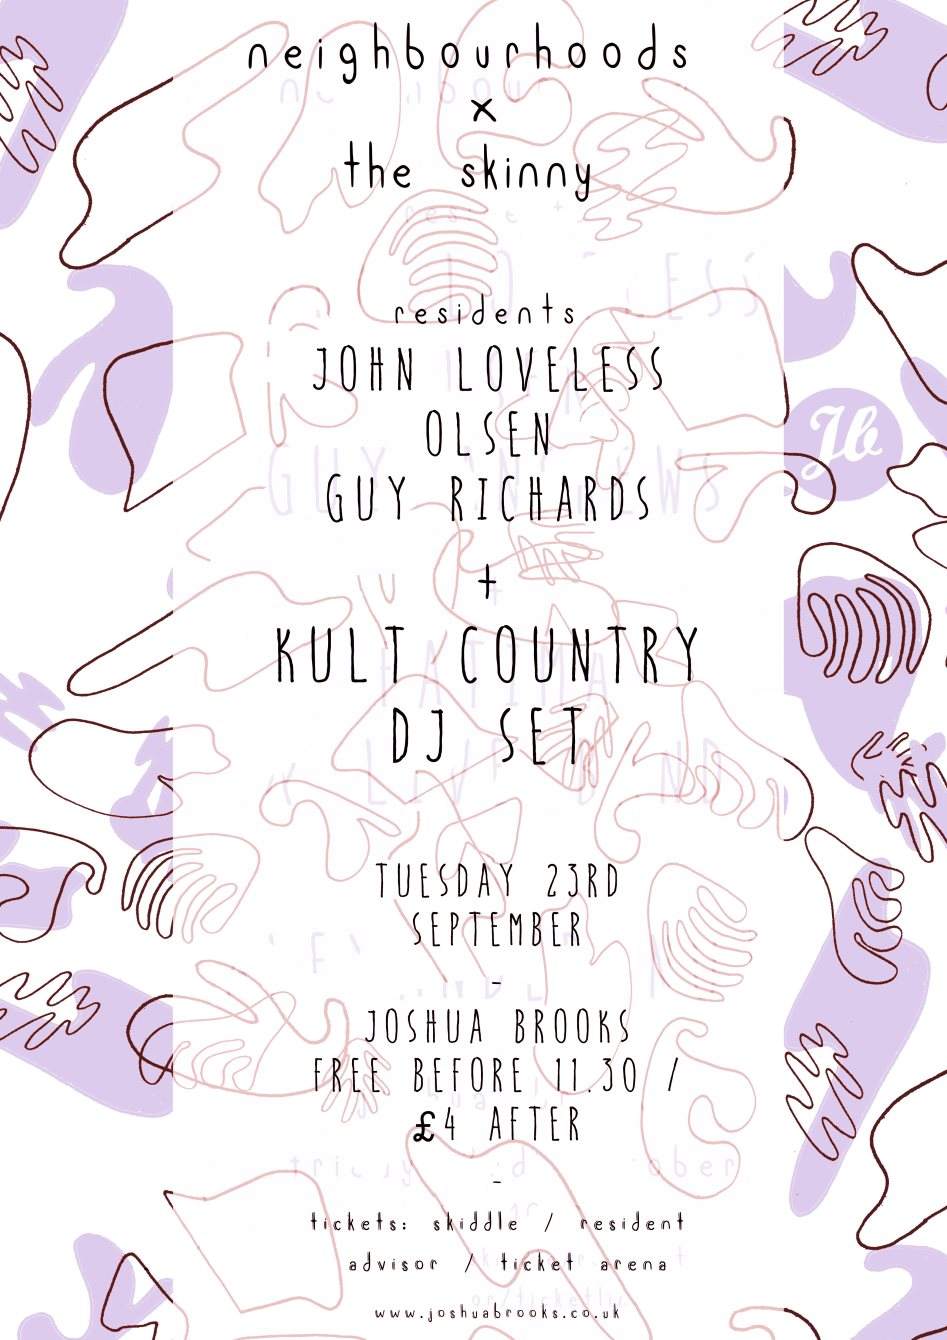 Neighbourhoods X The Skinny with Kult Country dj set / John Loveless / GUY Richards / Olsen - フライヤー表